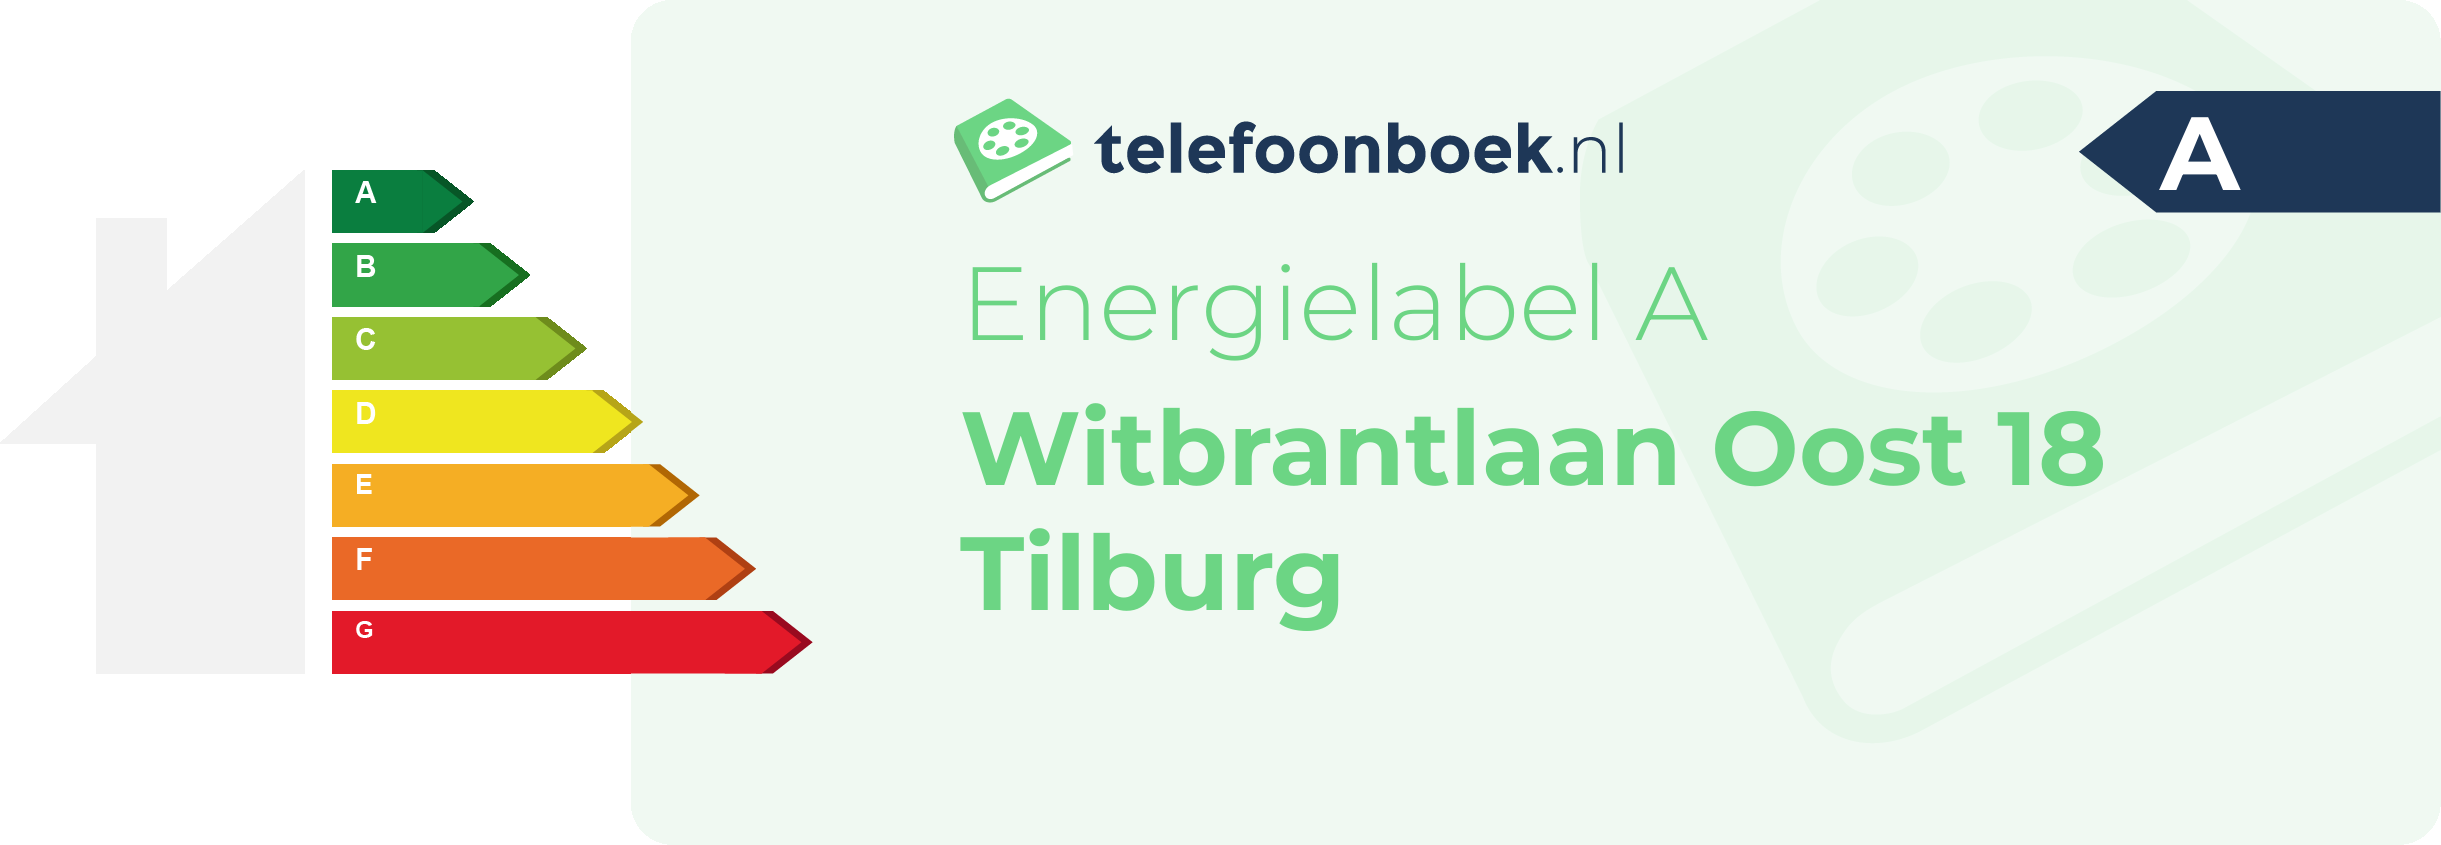 Energielabel Witbrantlaan Oost 18 Tilburg